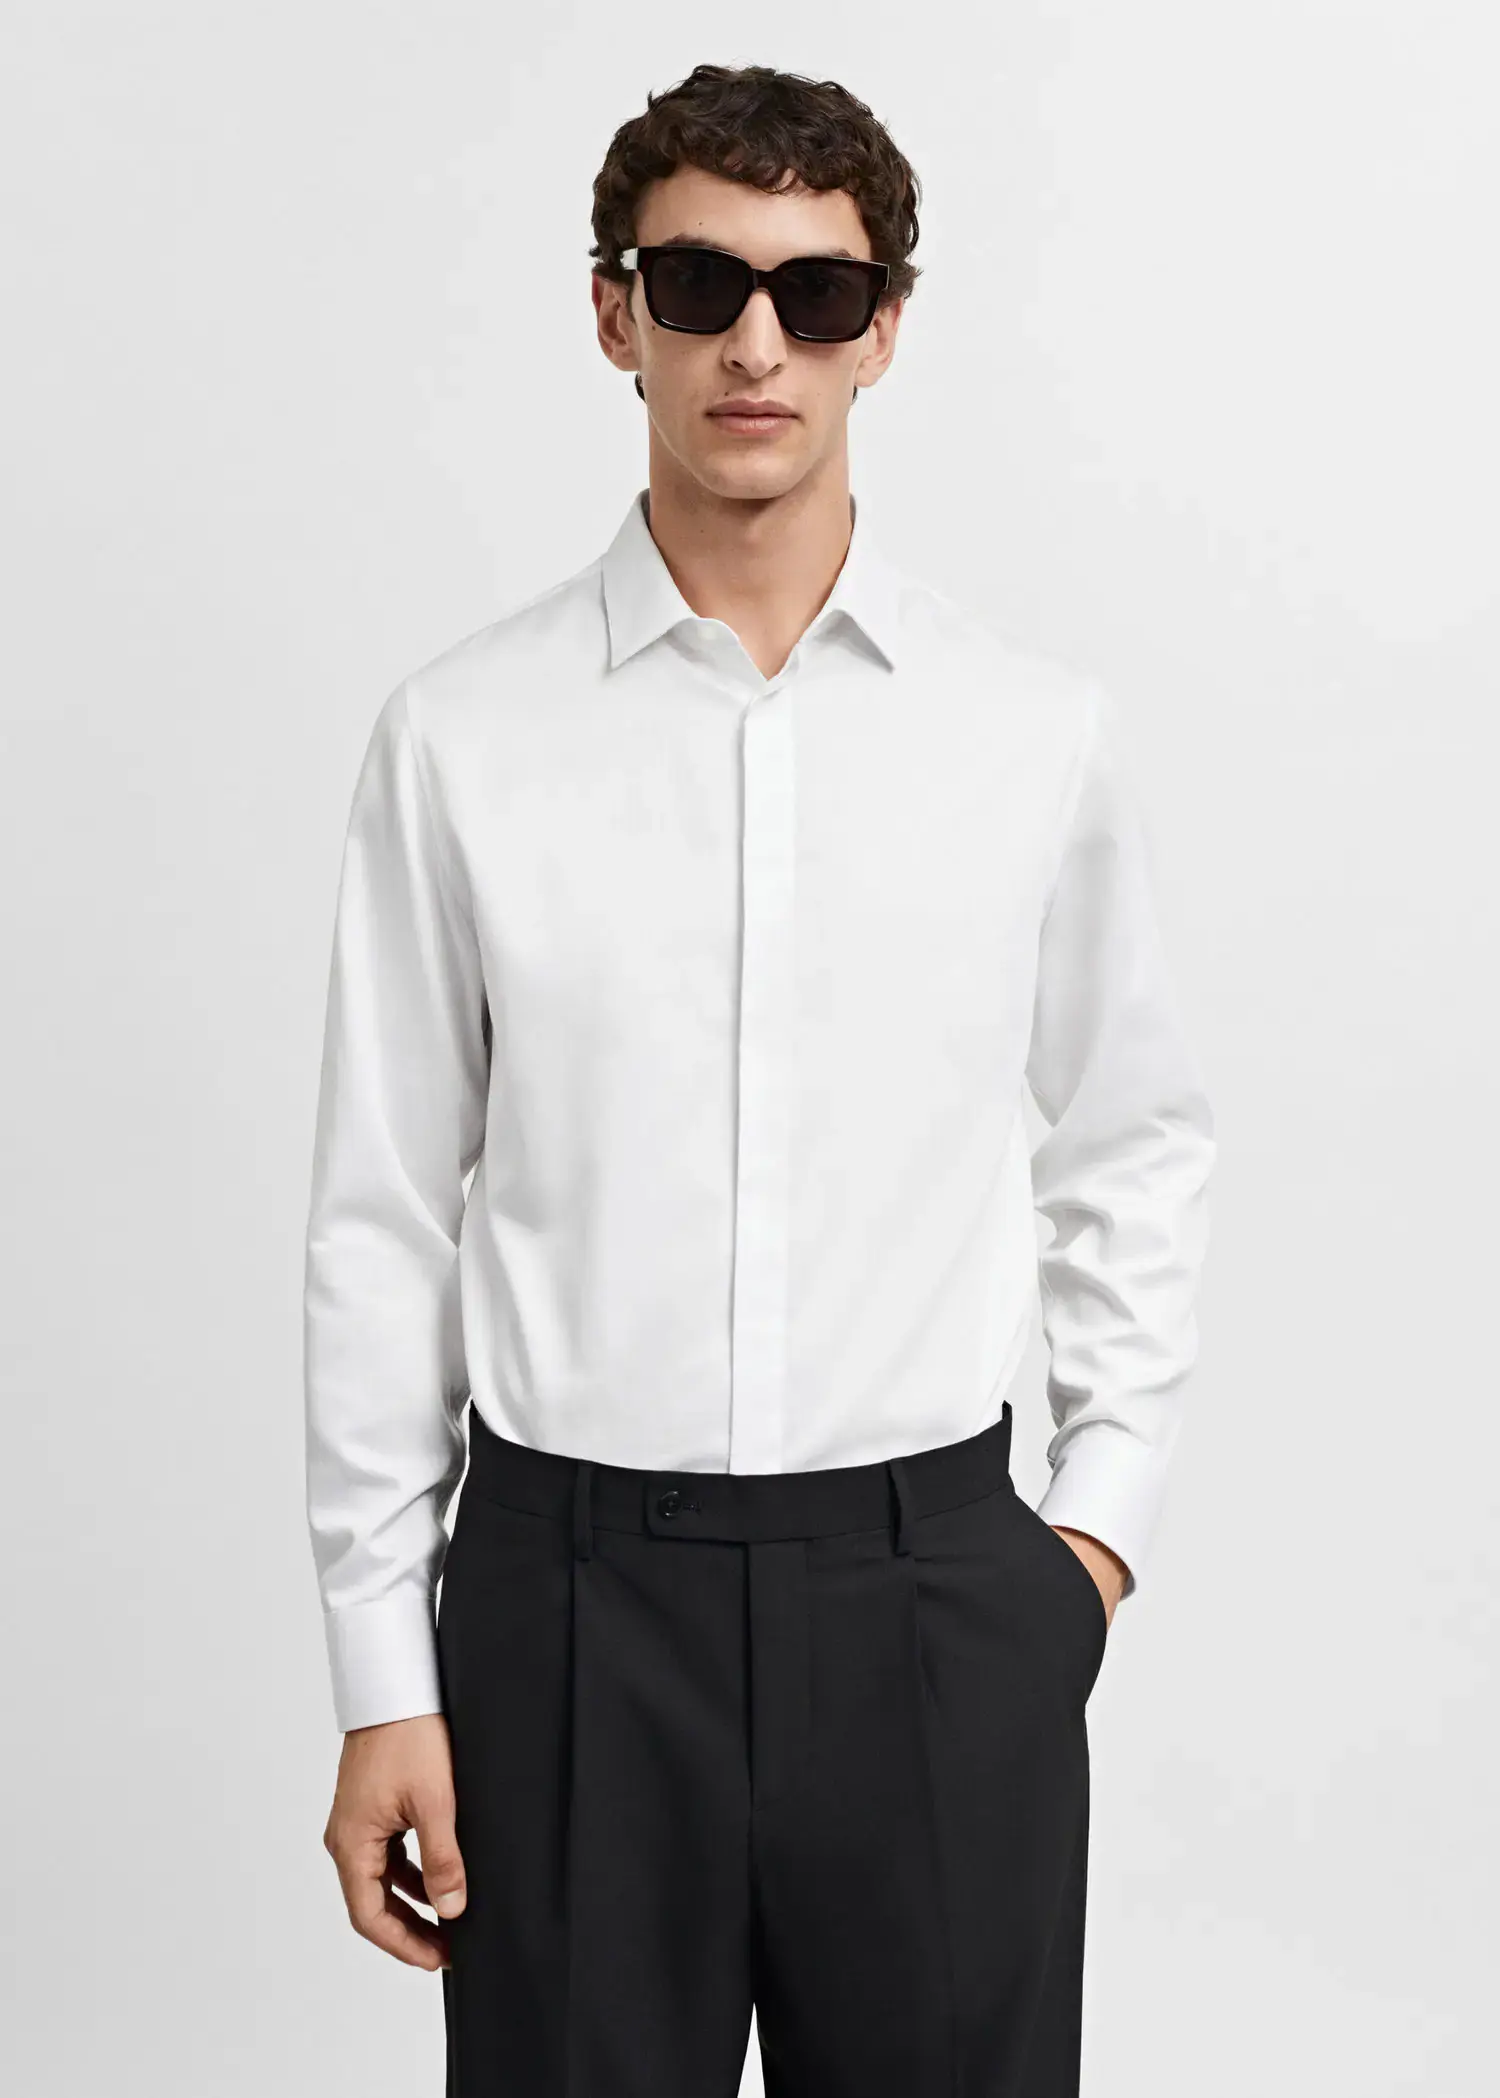 Mango 100% cotton slim-fit suit shirt. 2